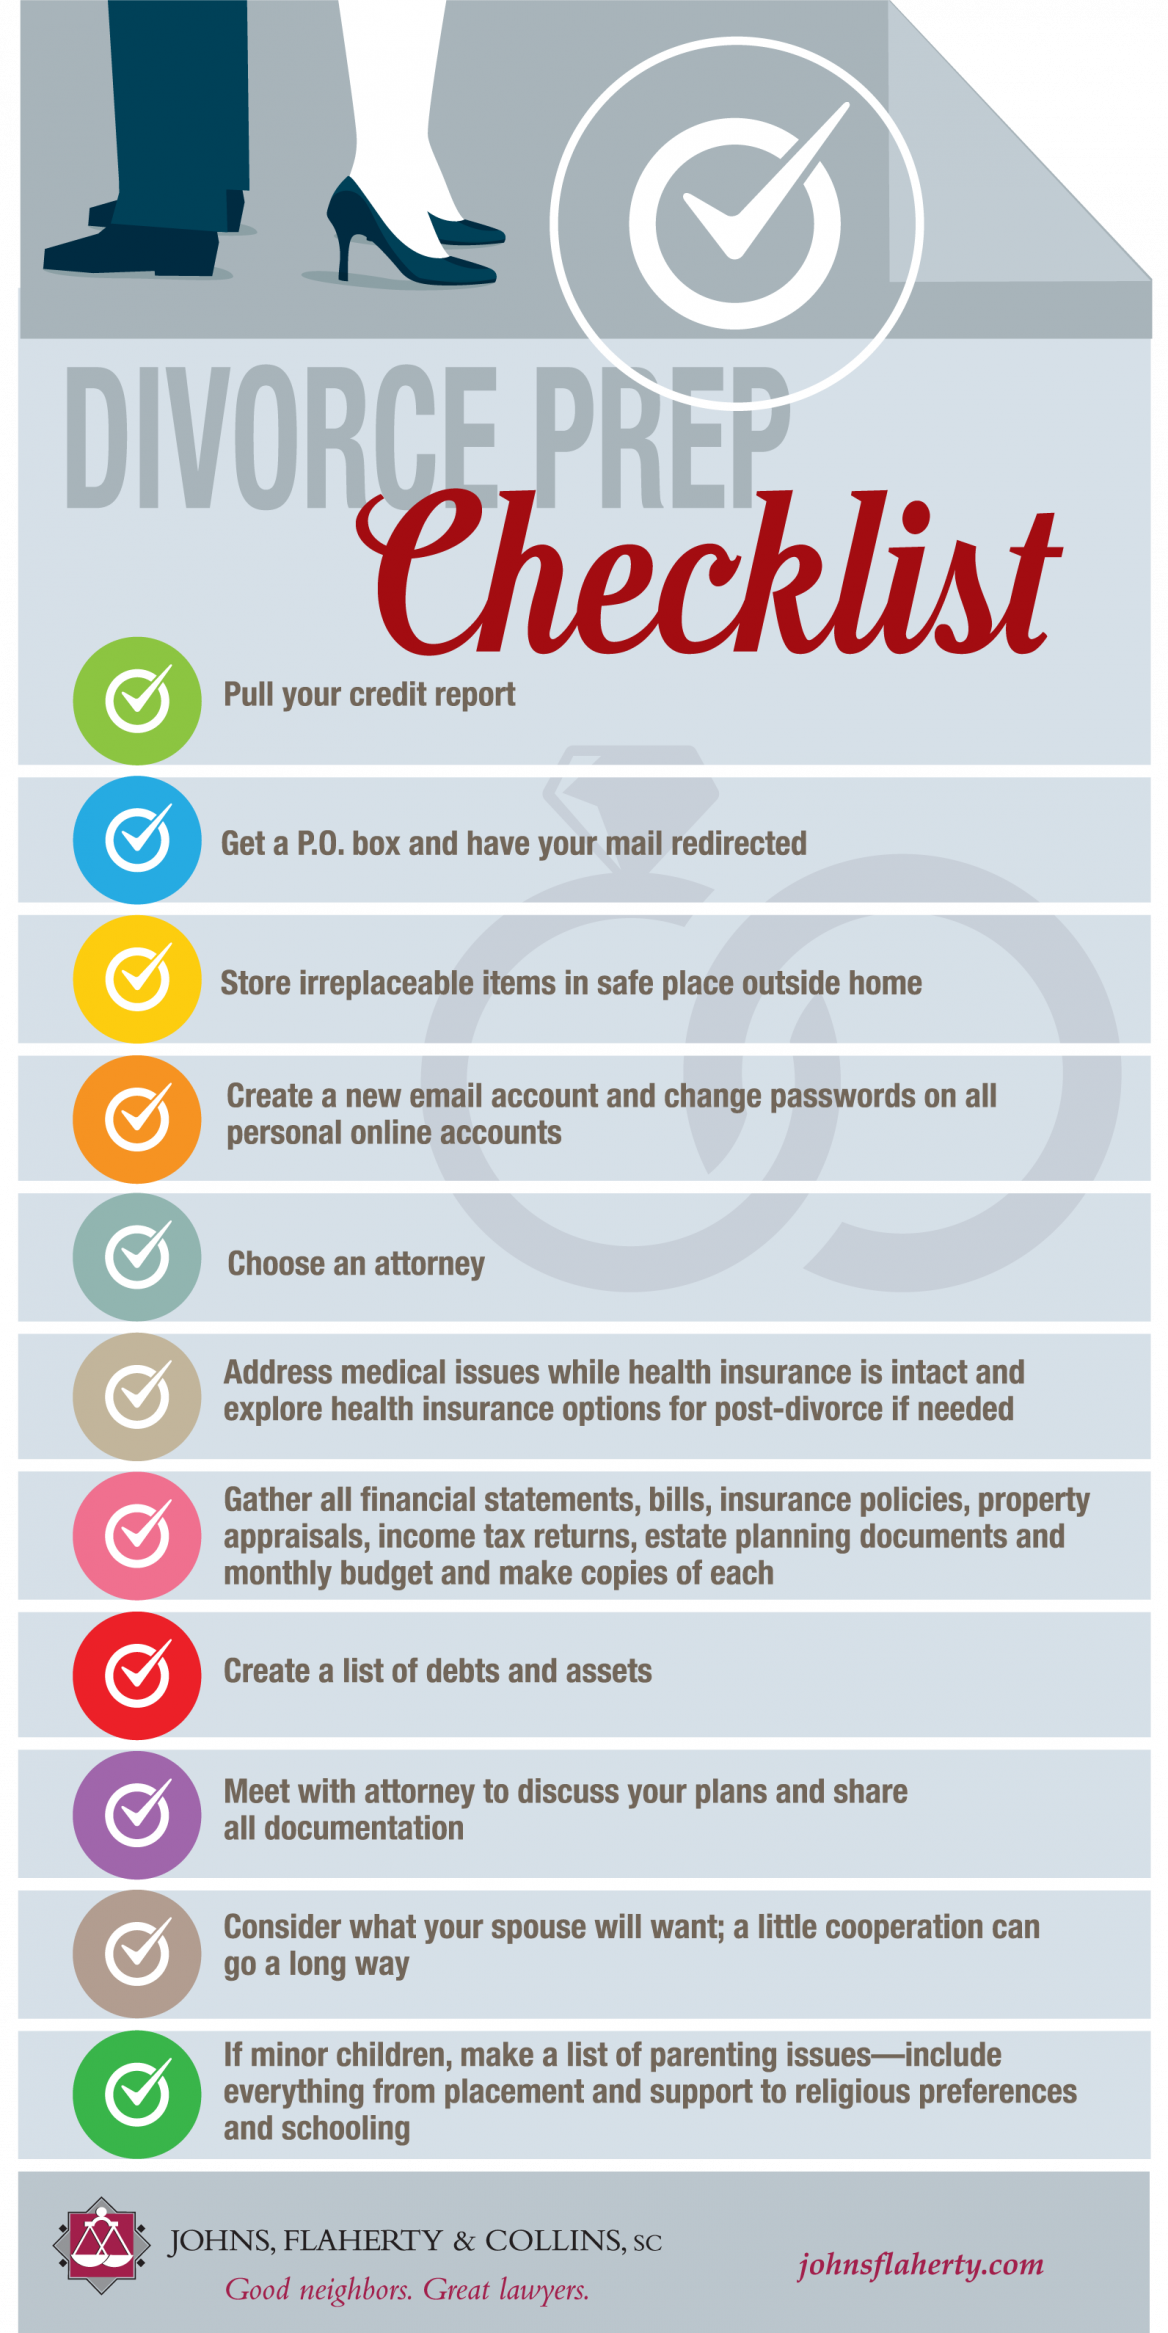 Divorce Prep Checklist Infographic